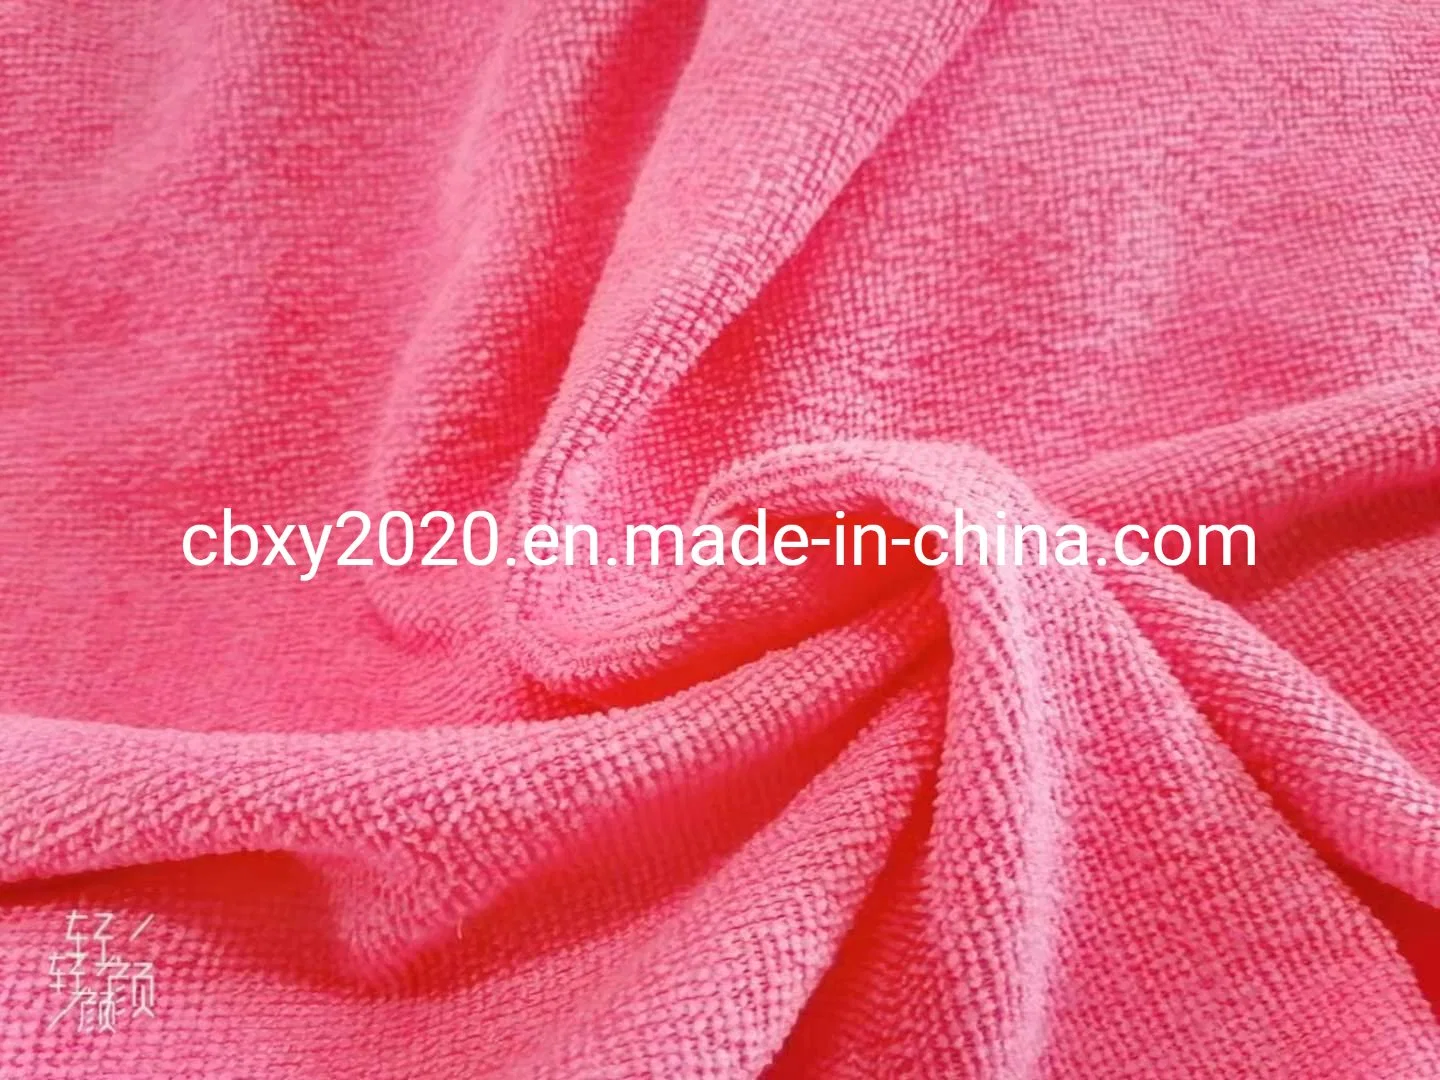 Полотенце ткань полиэстер / нейлон 200 GSM 180 см на заводе в текстильной, используемые в домашних / Гостиница / Компания / поверхностей